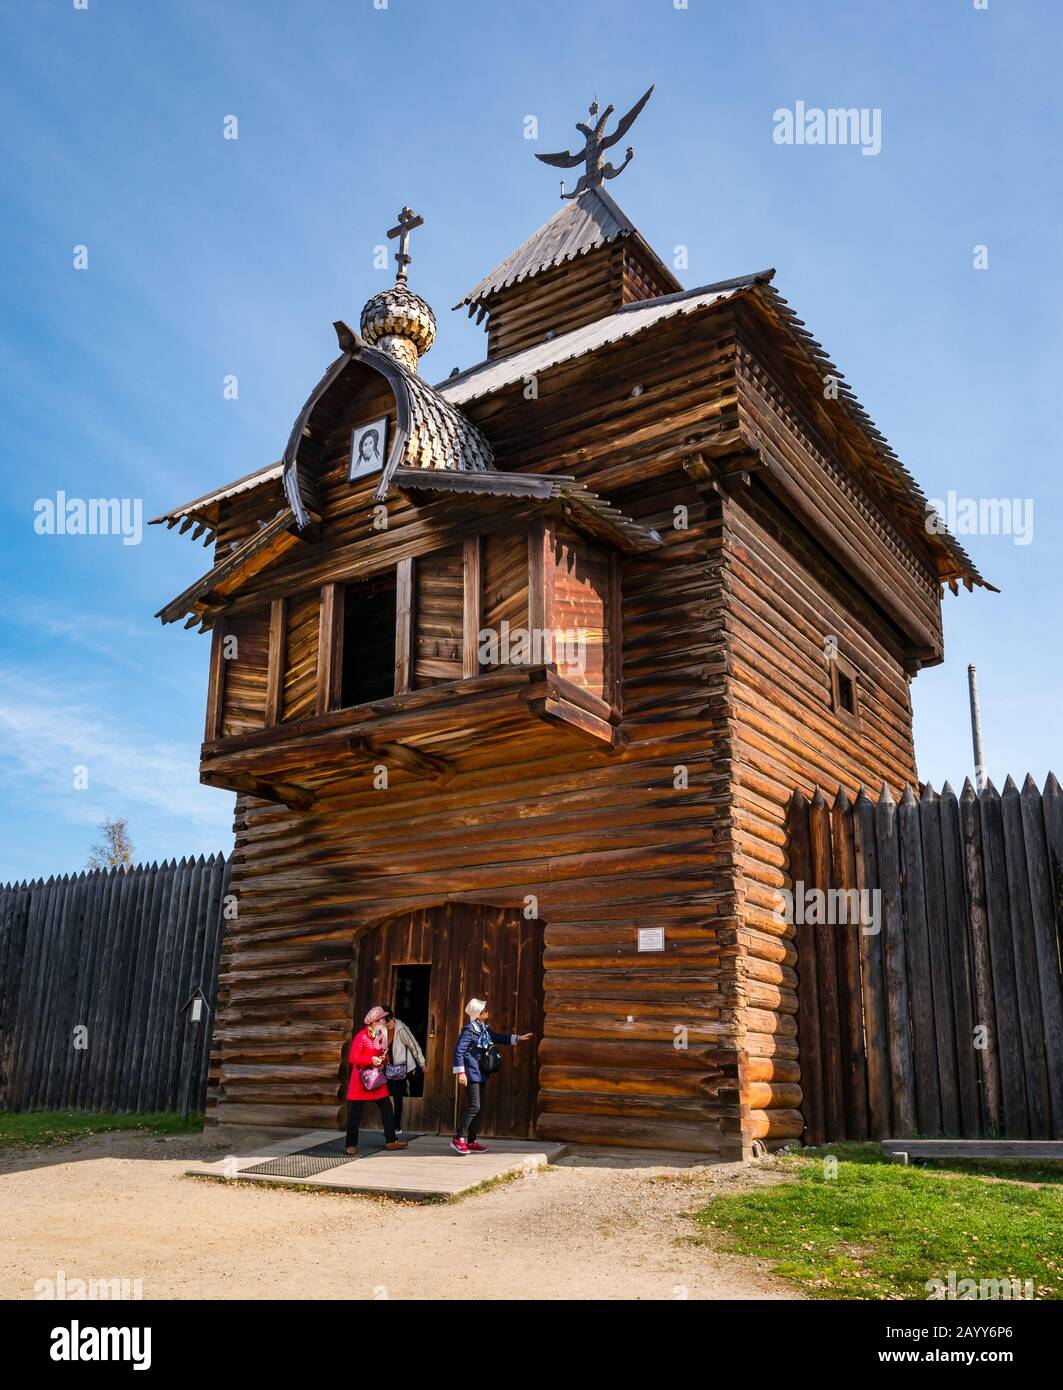 Chapelle ou église orthodoxe russe en bois de style traditionnel, Musée Taltsy d'architecture en bois, région d'Irkoutsk, Sibérie, Russie Banque D'Images